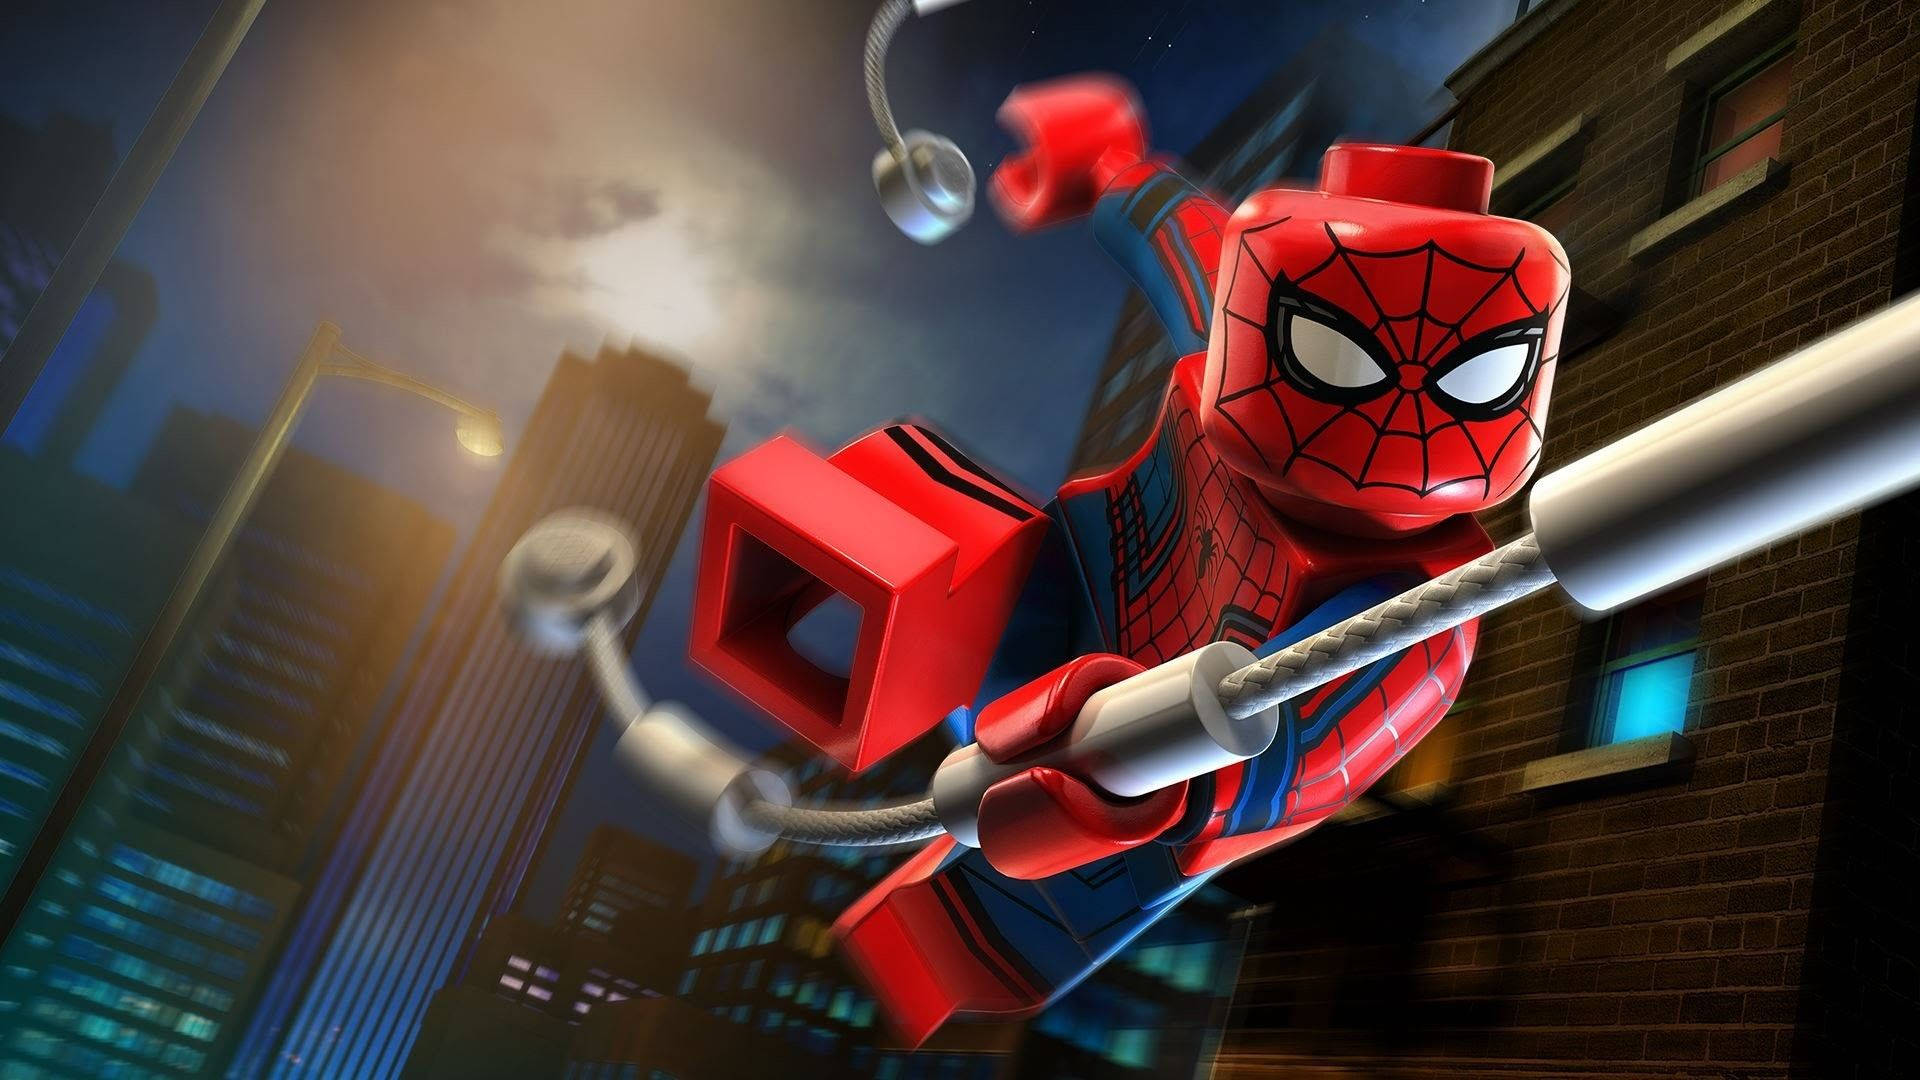 Iron Spiderman Lego Nighttime Cityscape Background